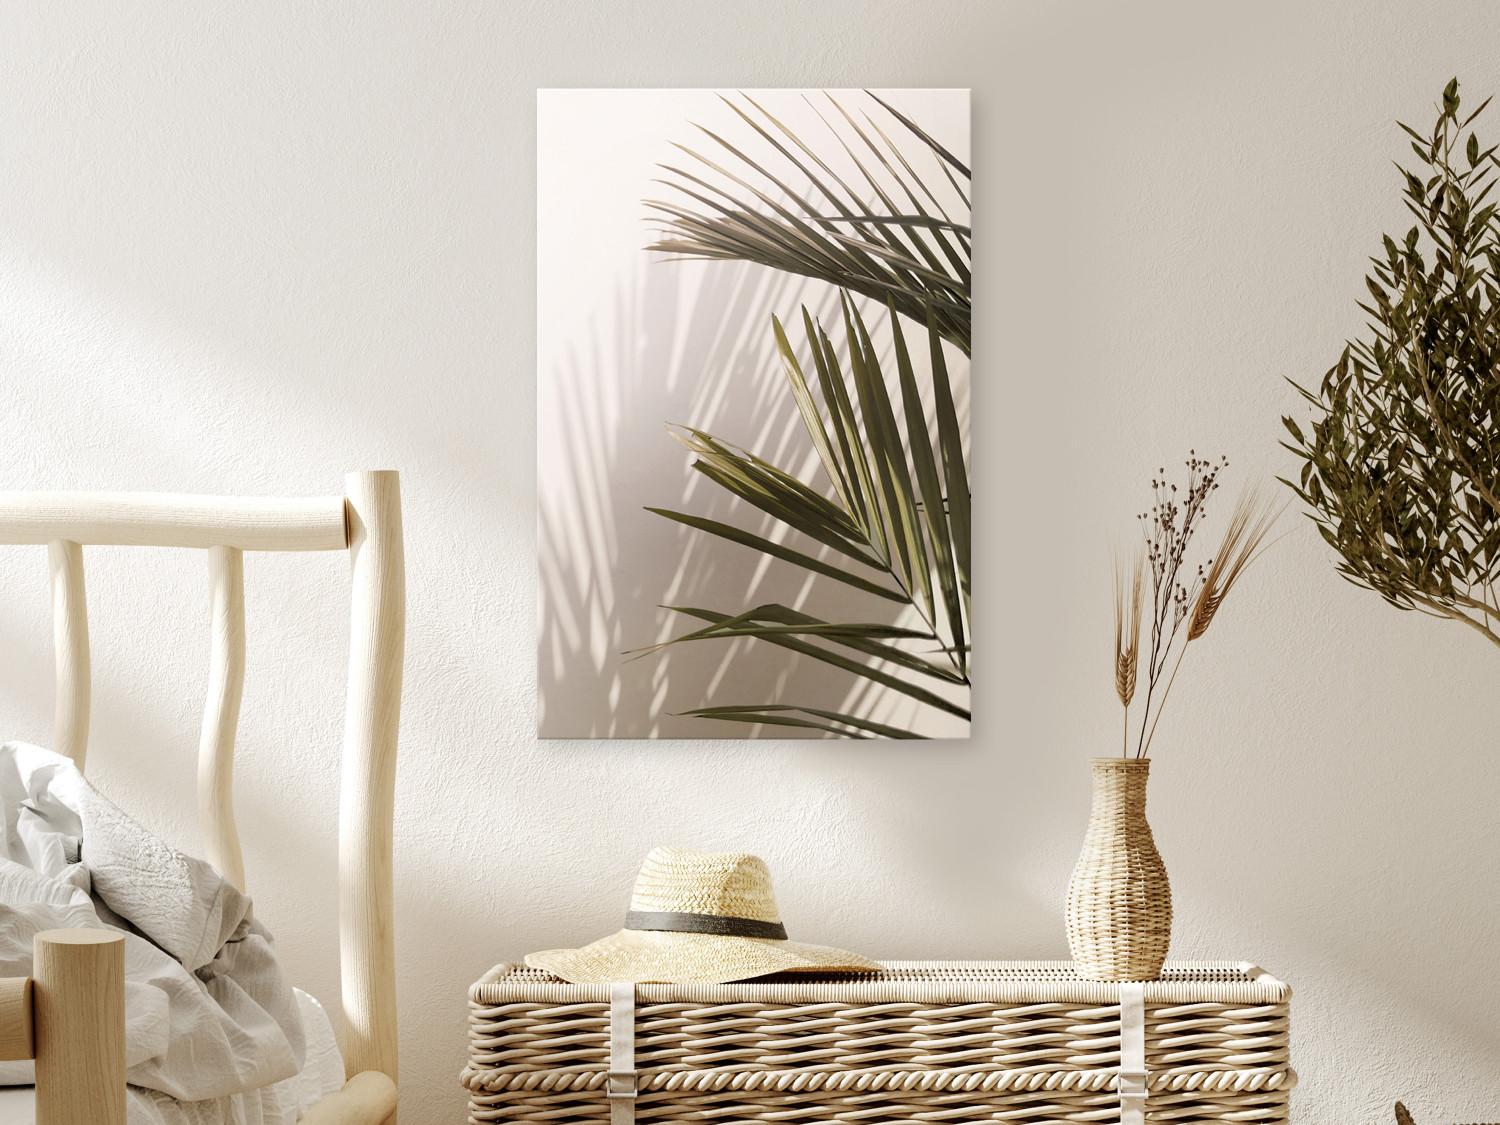 Cuadro decorativo Hojas de palma (1 parte) - paisaje de plantas verdes sobre fondo claro